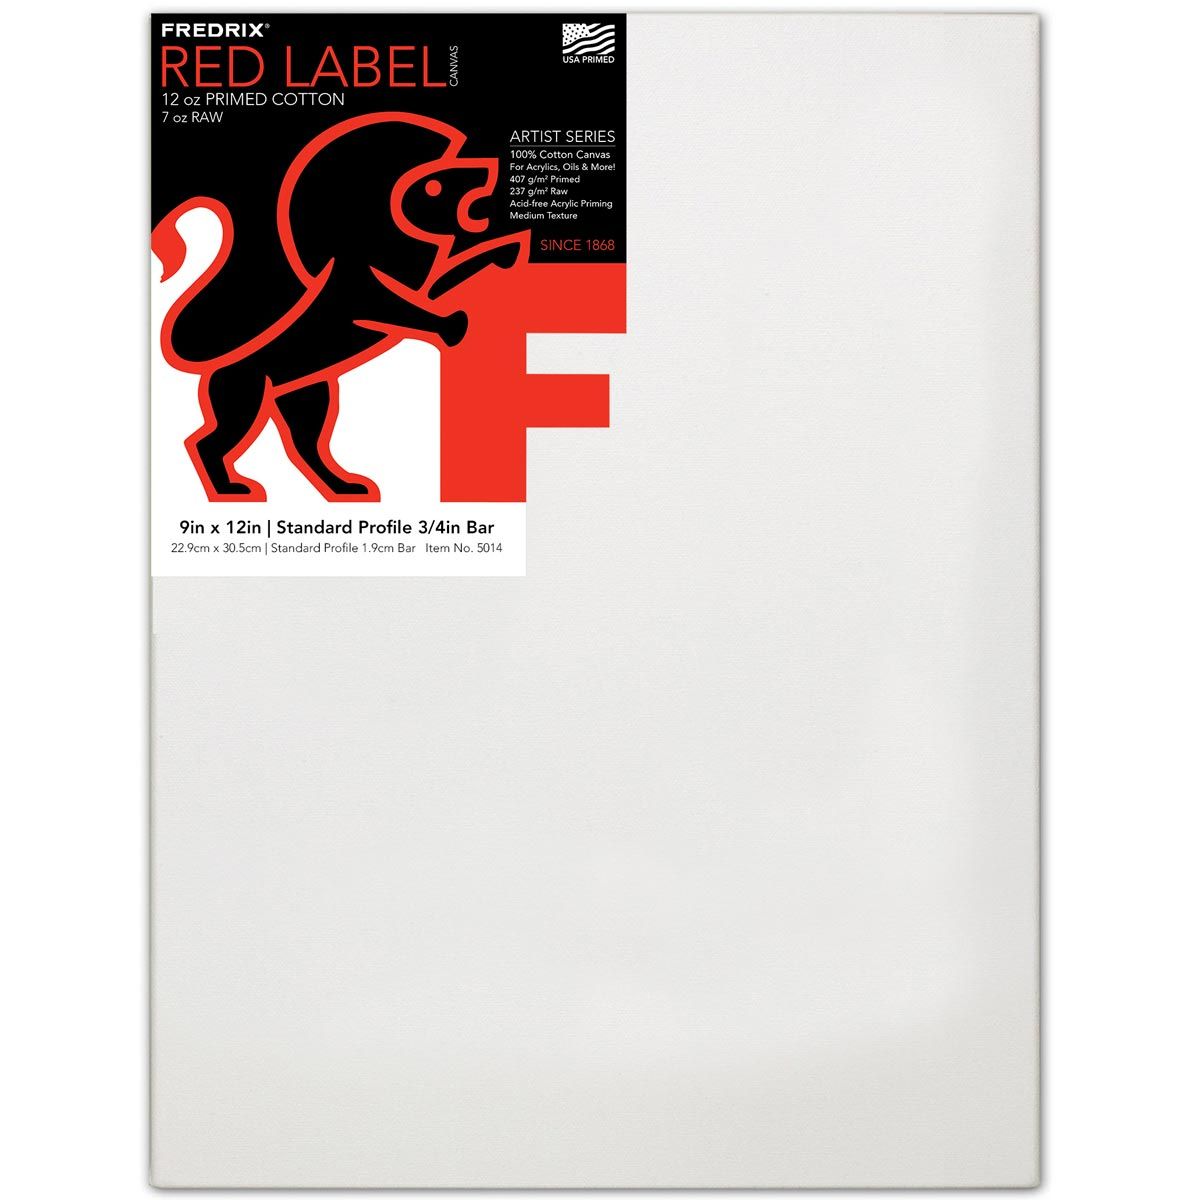 Fredrix Red Label 3/4" Profile Cotton Canvas 9" x 12"